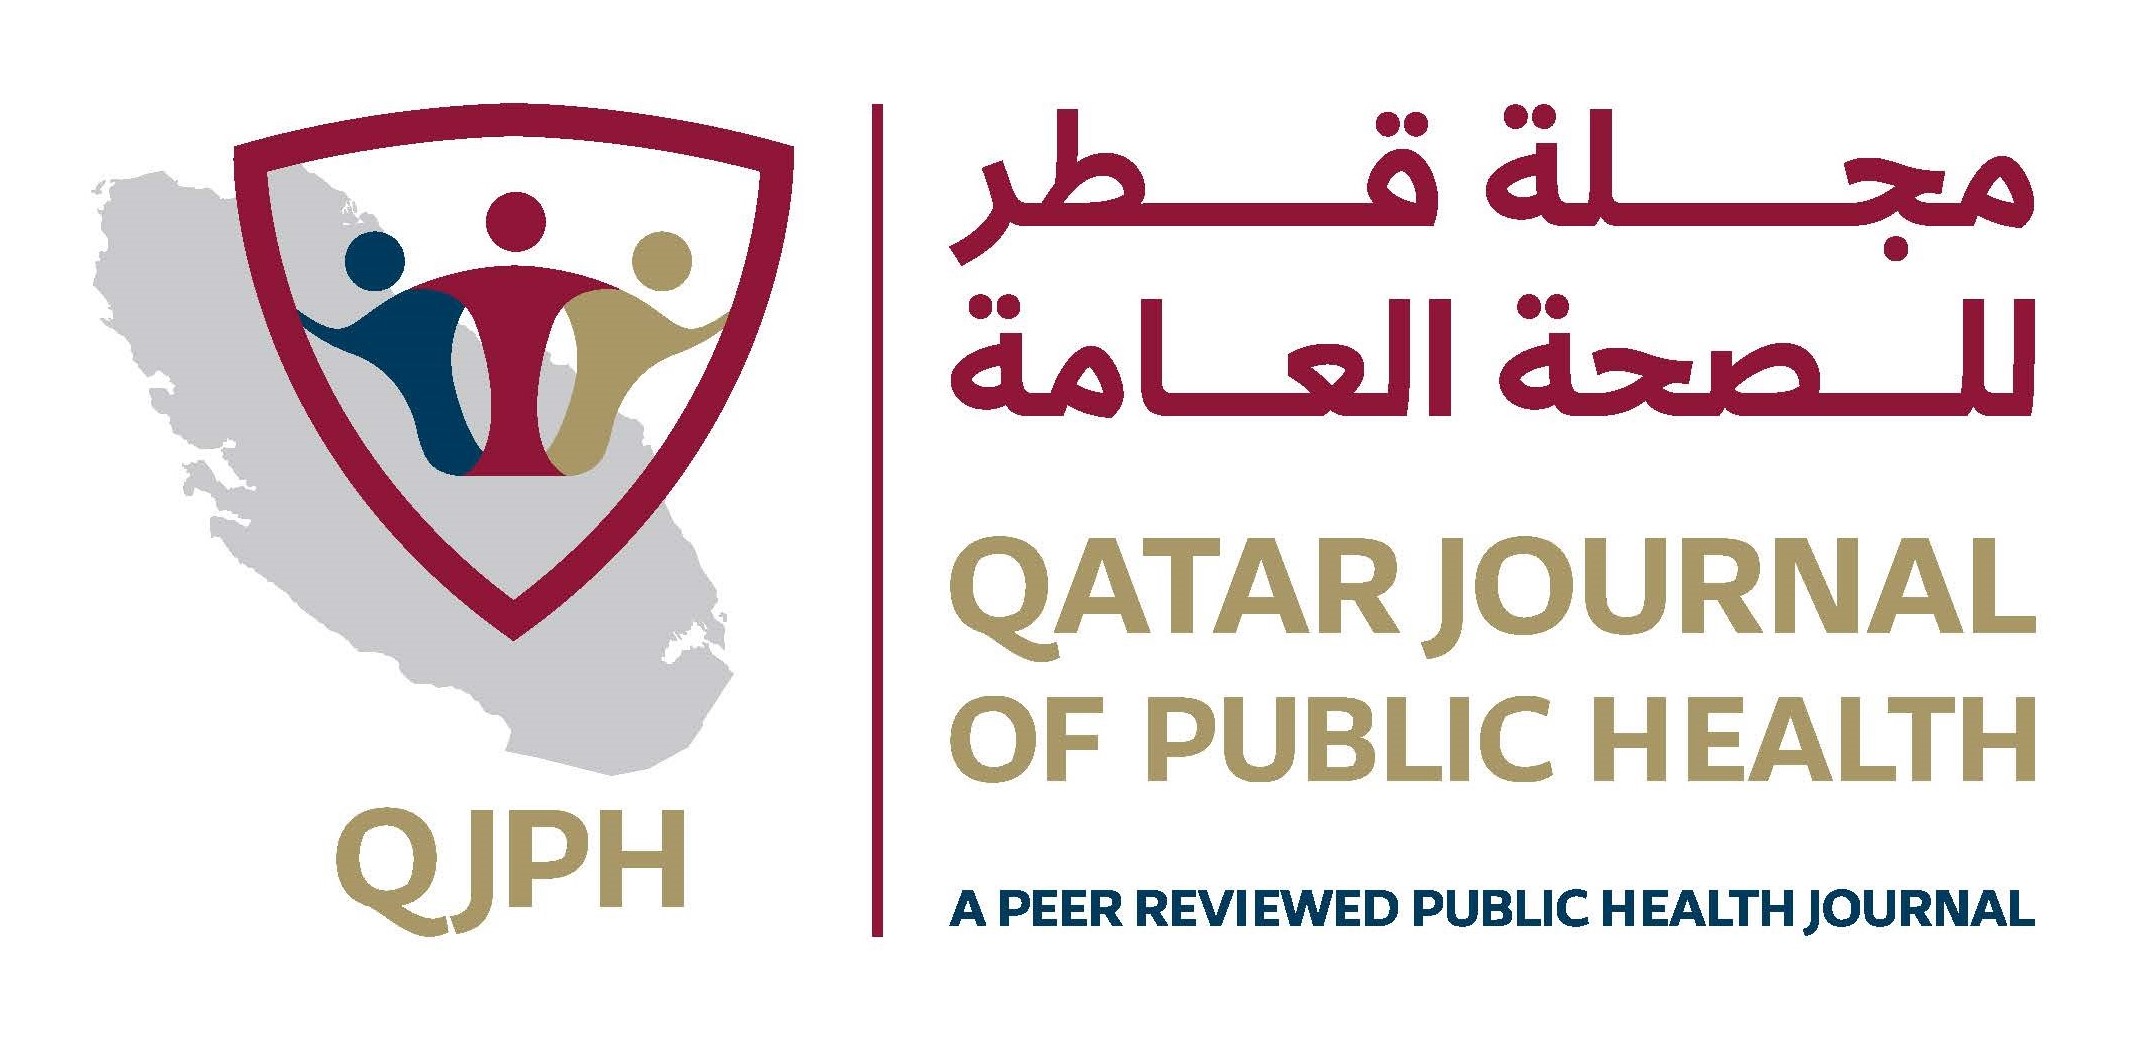 Qatar Journal of Public Health